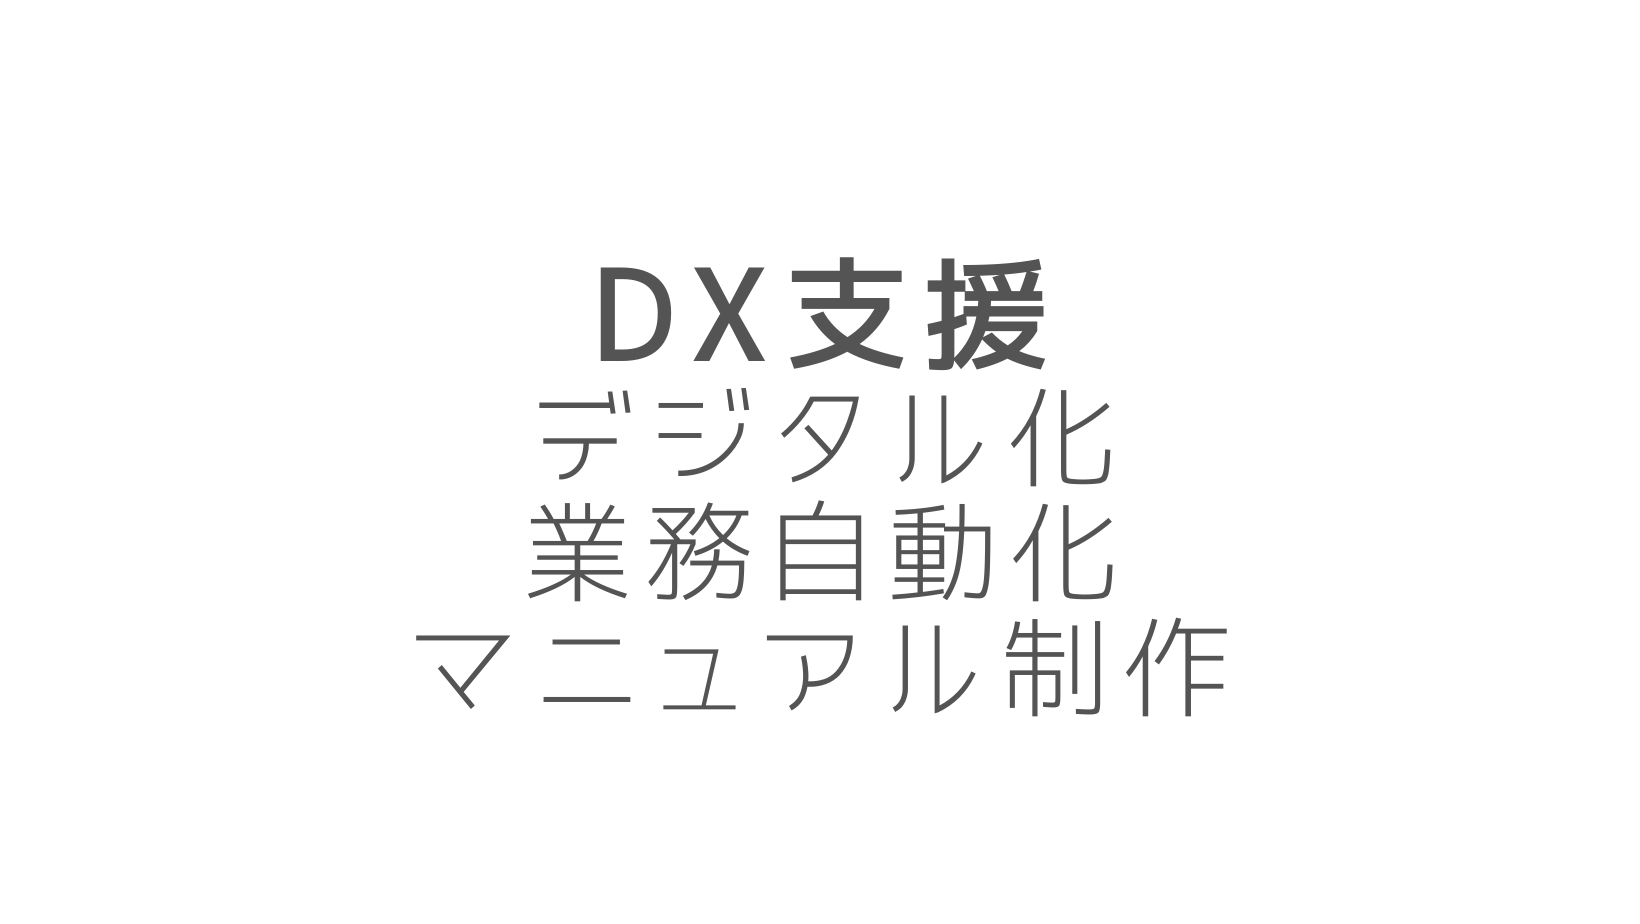 DX支援・業務効率化・自動化・デジタル化・マニュアル制作